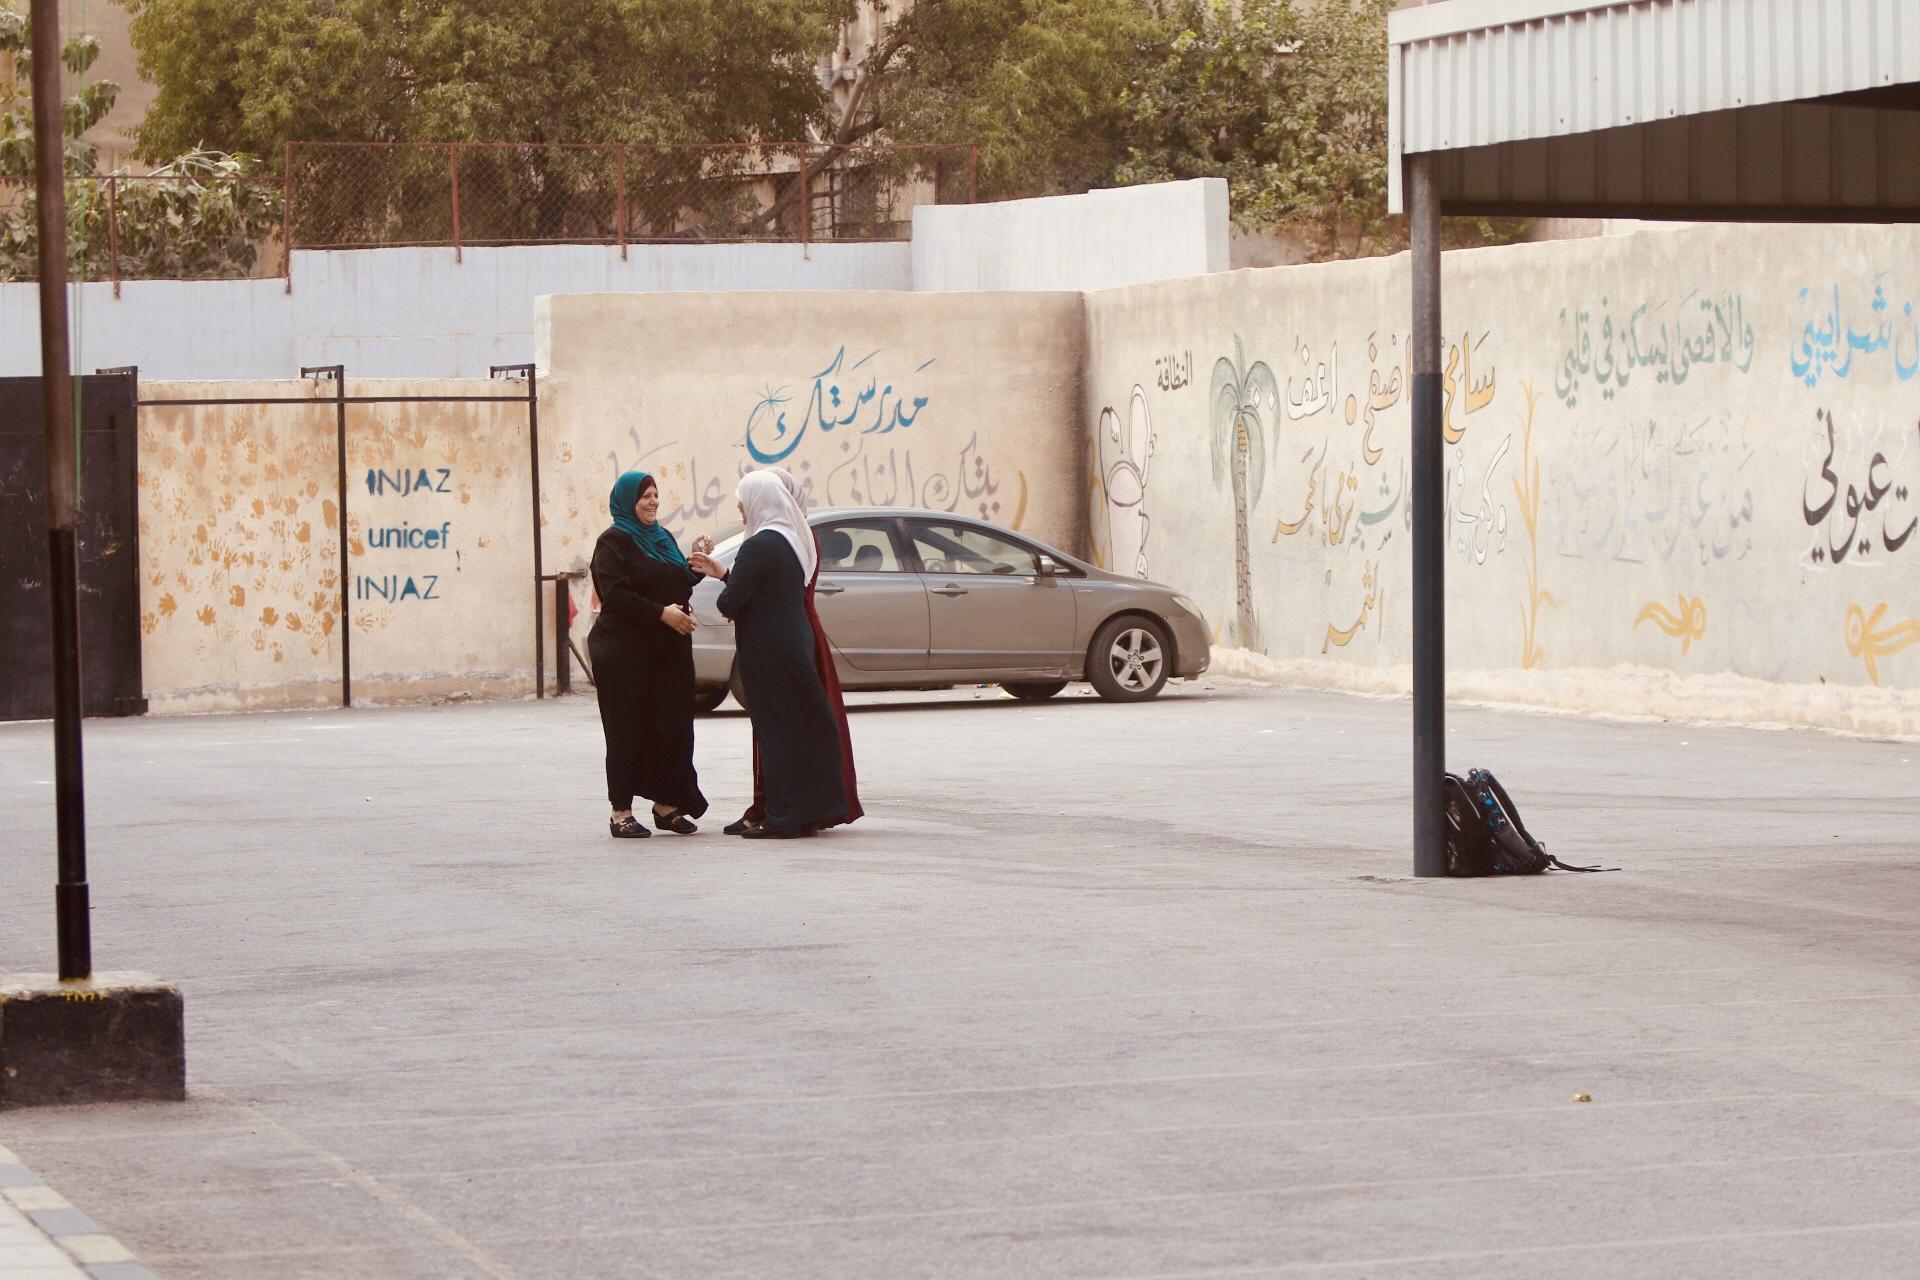 معلمات مشاركات في الإضراب أثناء وجودهن في ساحة مدرسة شرقي عمّان، 8 أيلول/سبتمبر 2019. (صلاح ملكاوي/المملكة)